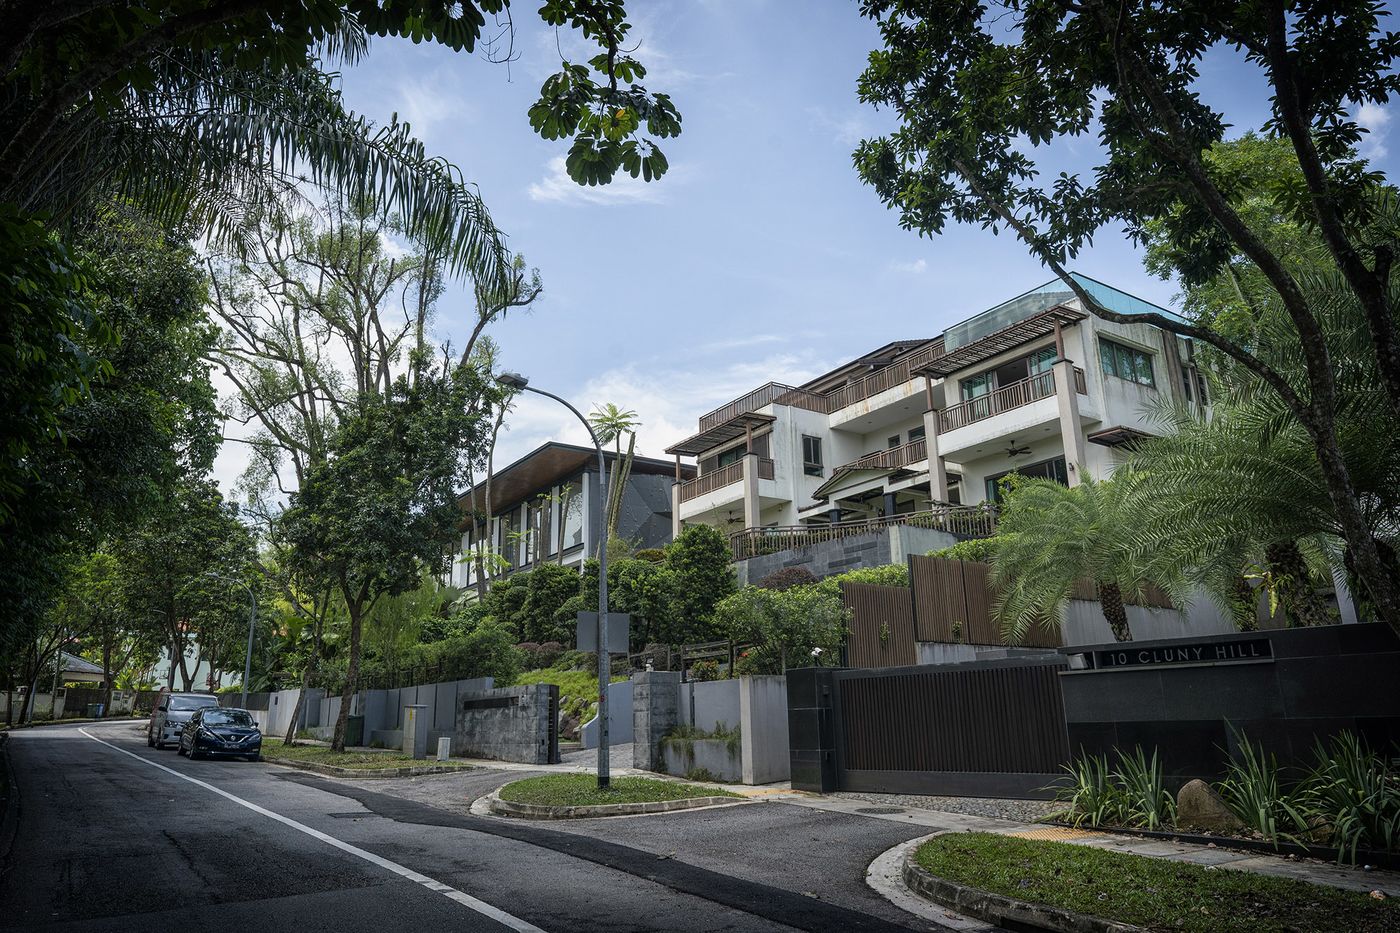 Những bungalow cao cấp ở khu Cluny Hill của Singapore - Ảnh: Bloomberg.